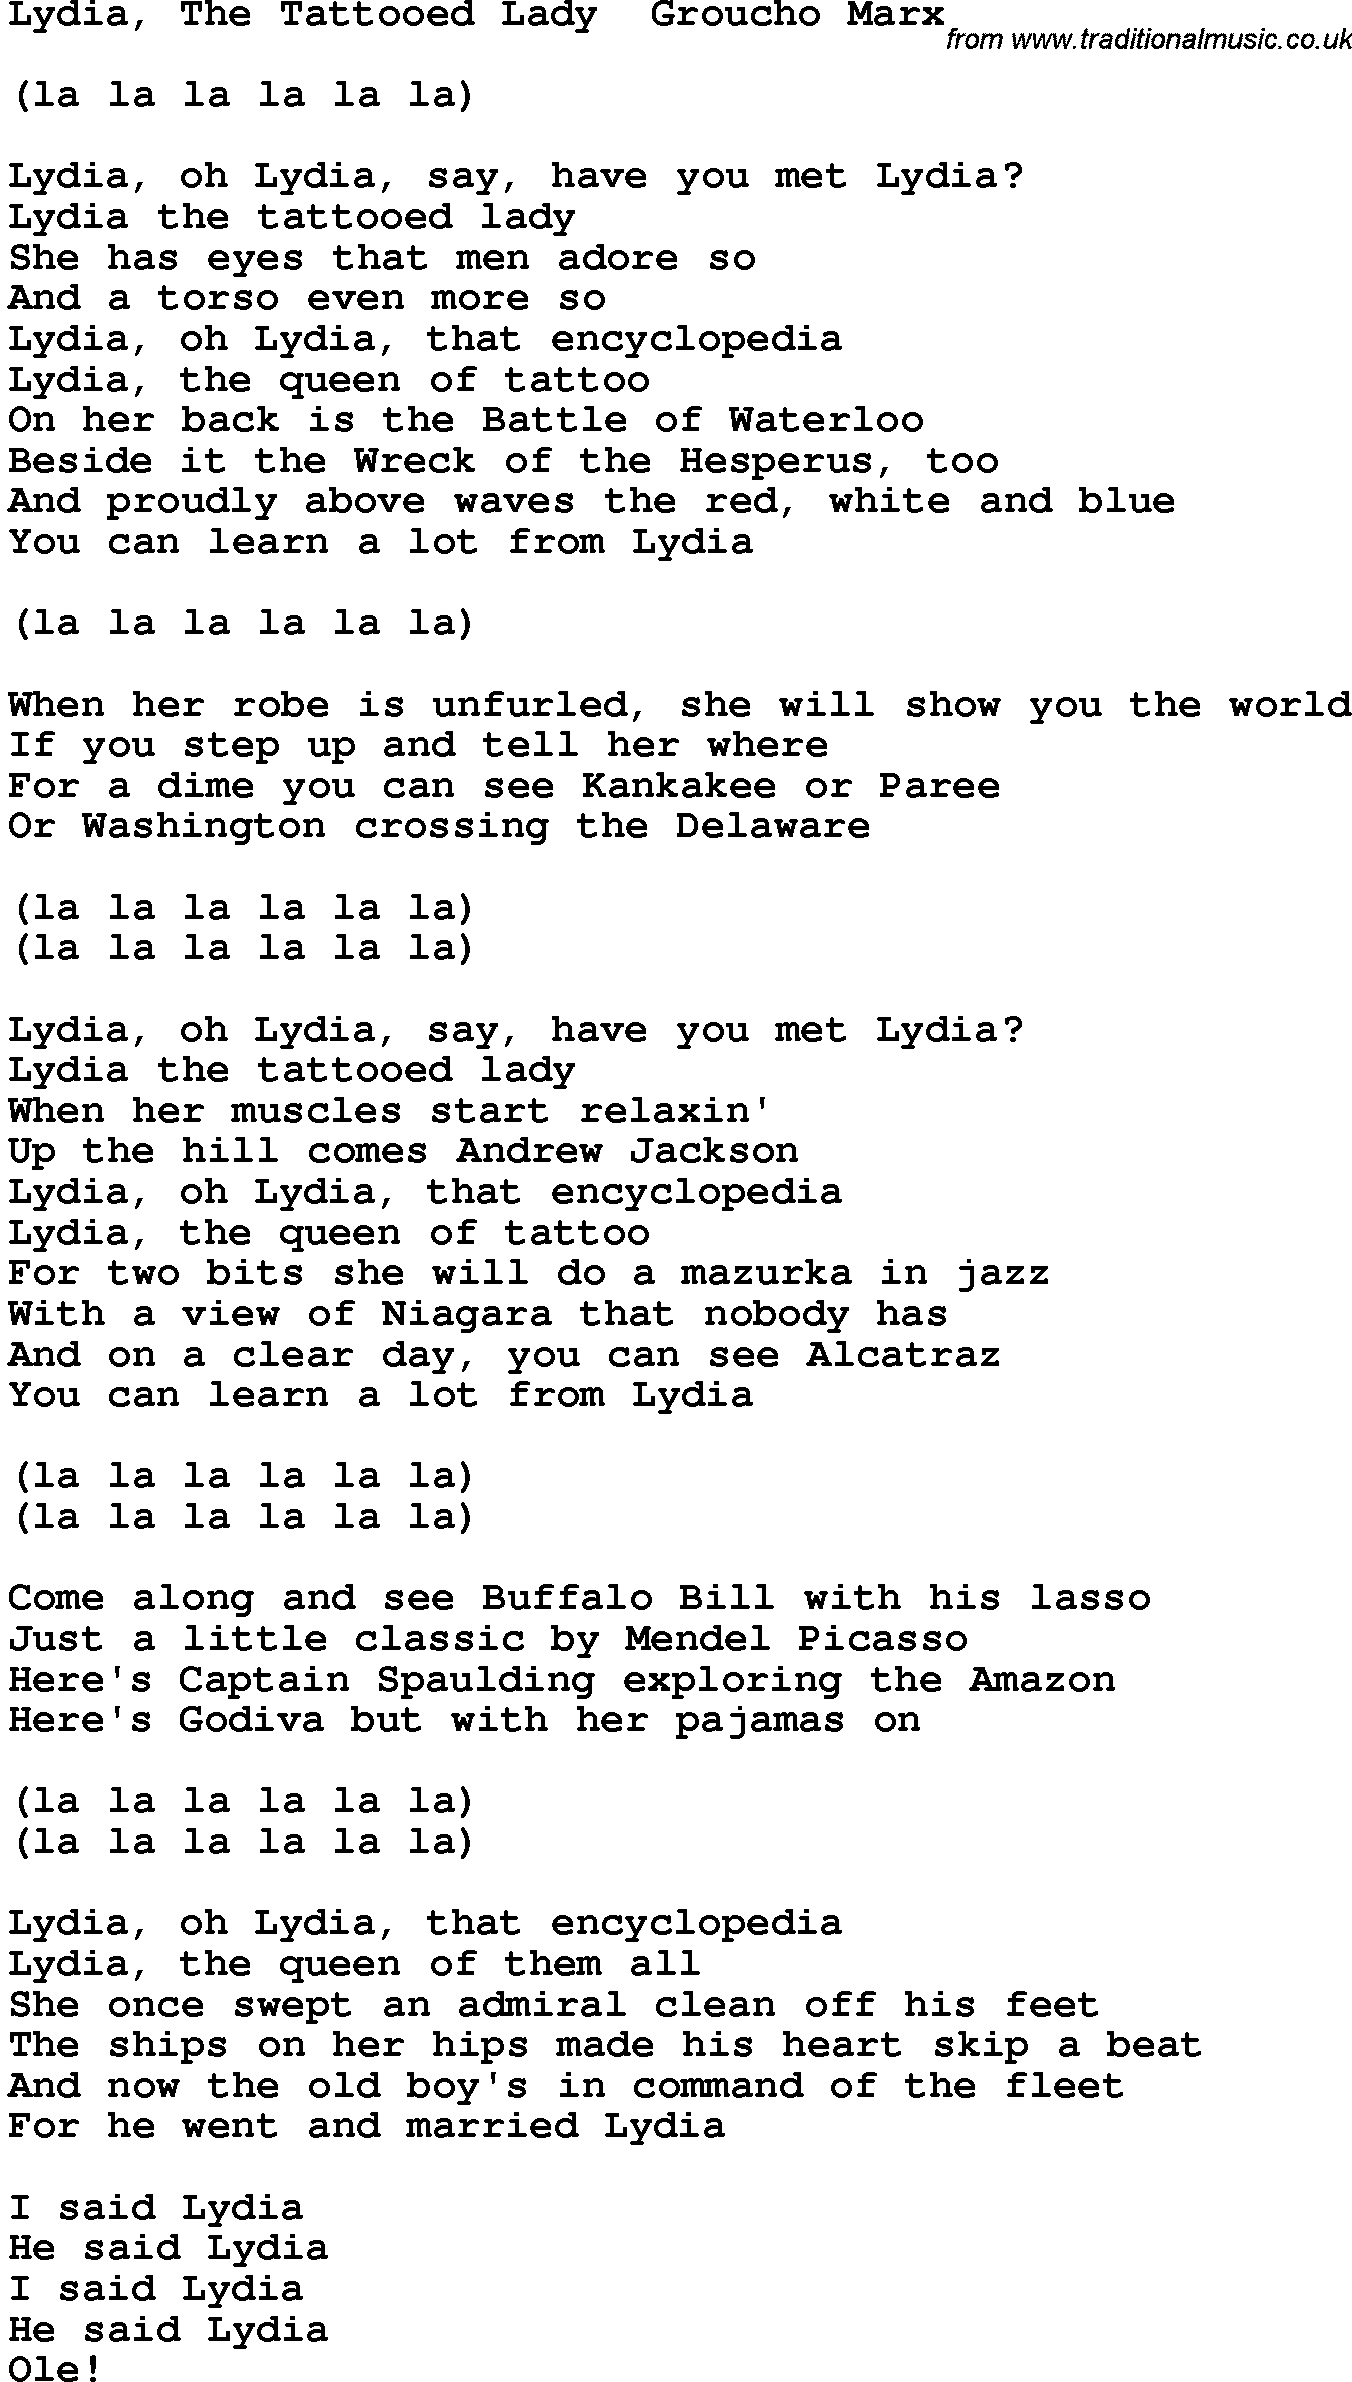 Novelty song: Lydia, The Tattooed Lady Groucho Marx lyrics